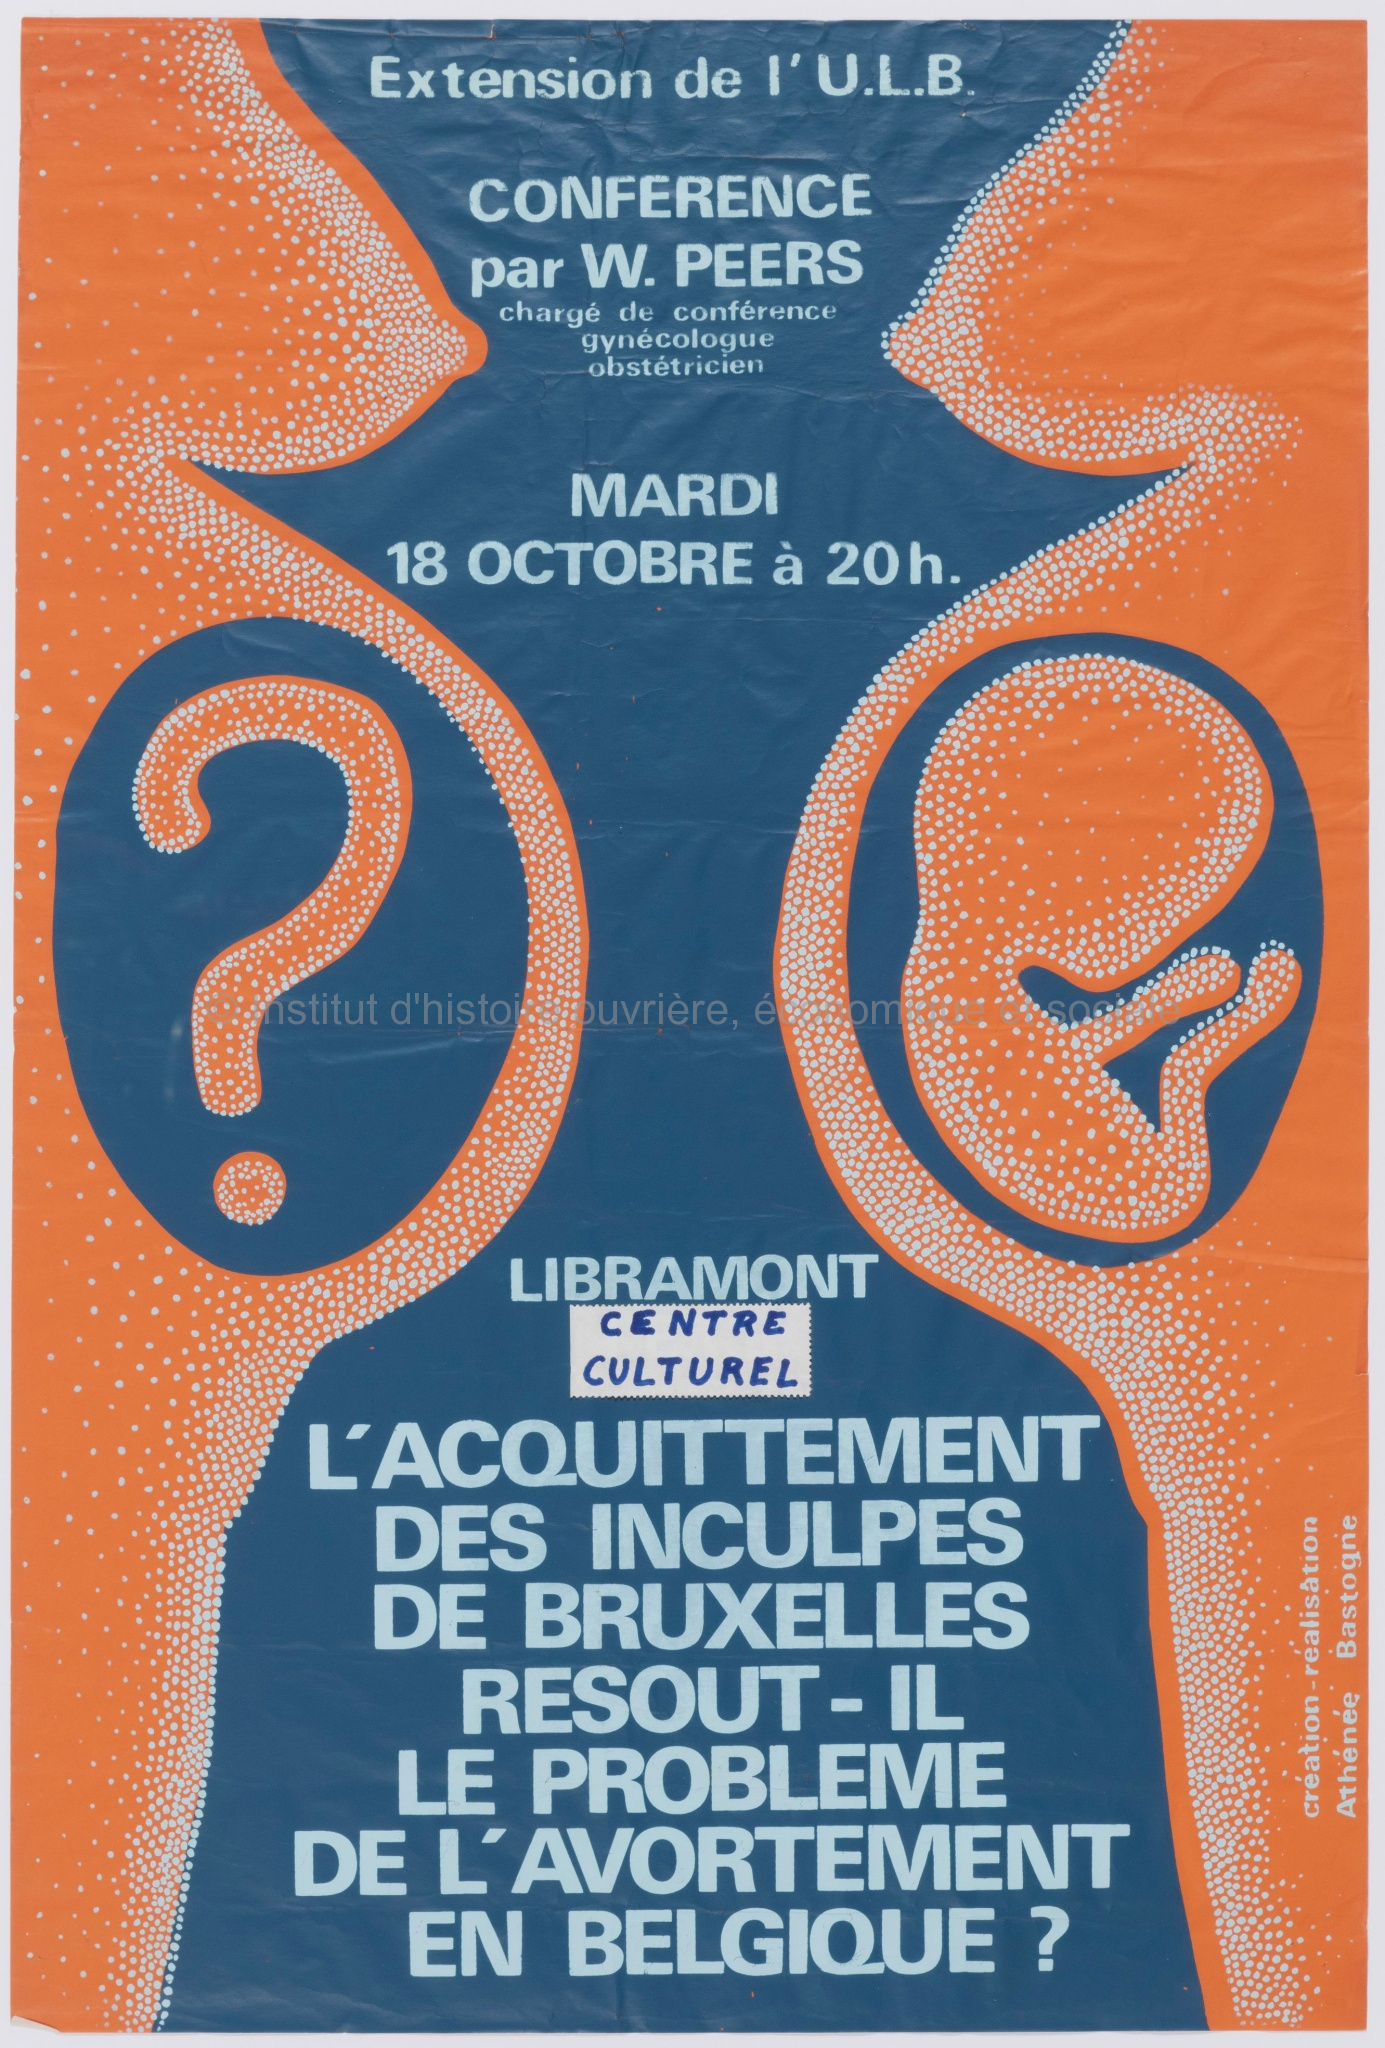 L'acquittement des inculpés de Bruxelles résout-il le problème de l'avortement en Belgique ? : conférence par W. Peers : mardi 18 octobre à 20h, Libramont